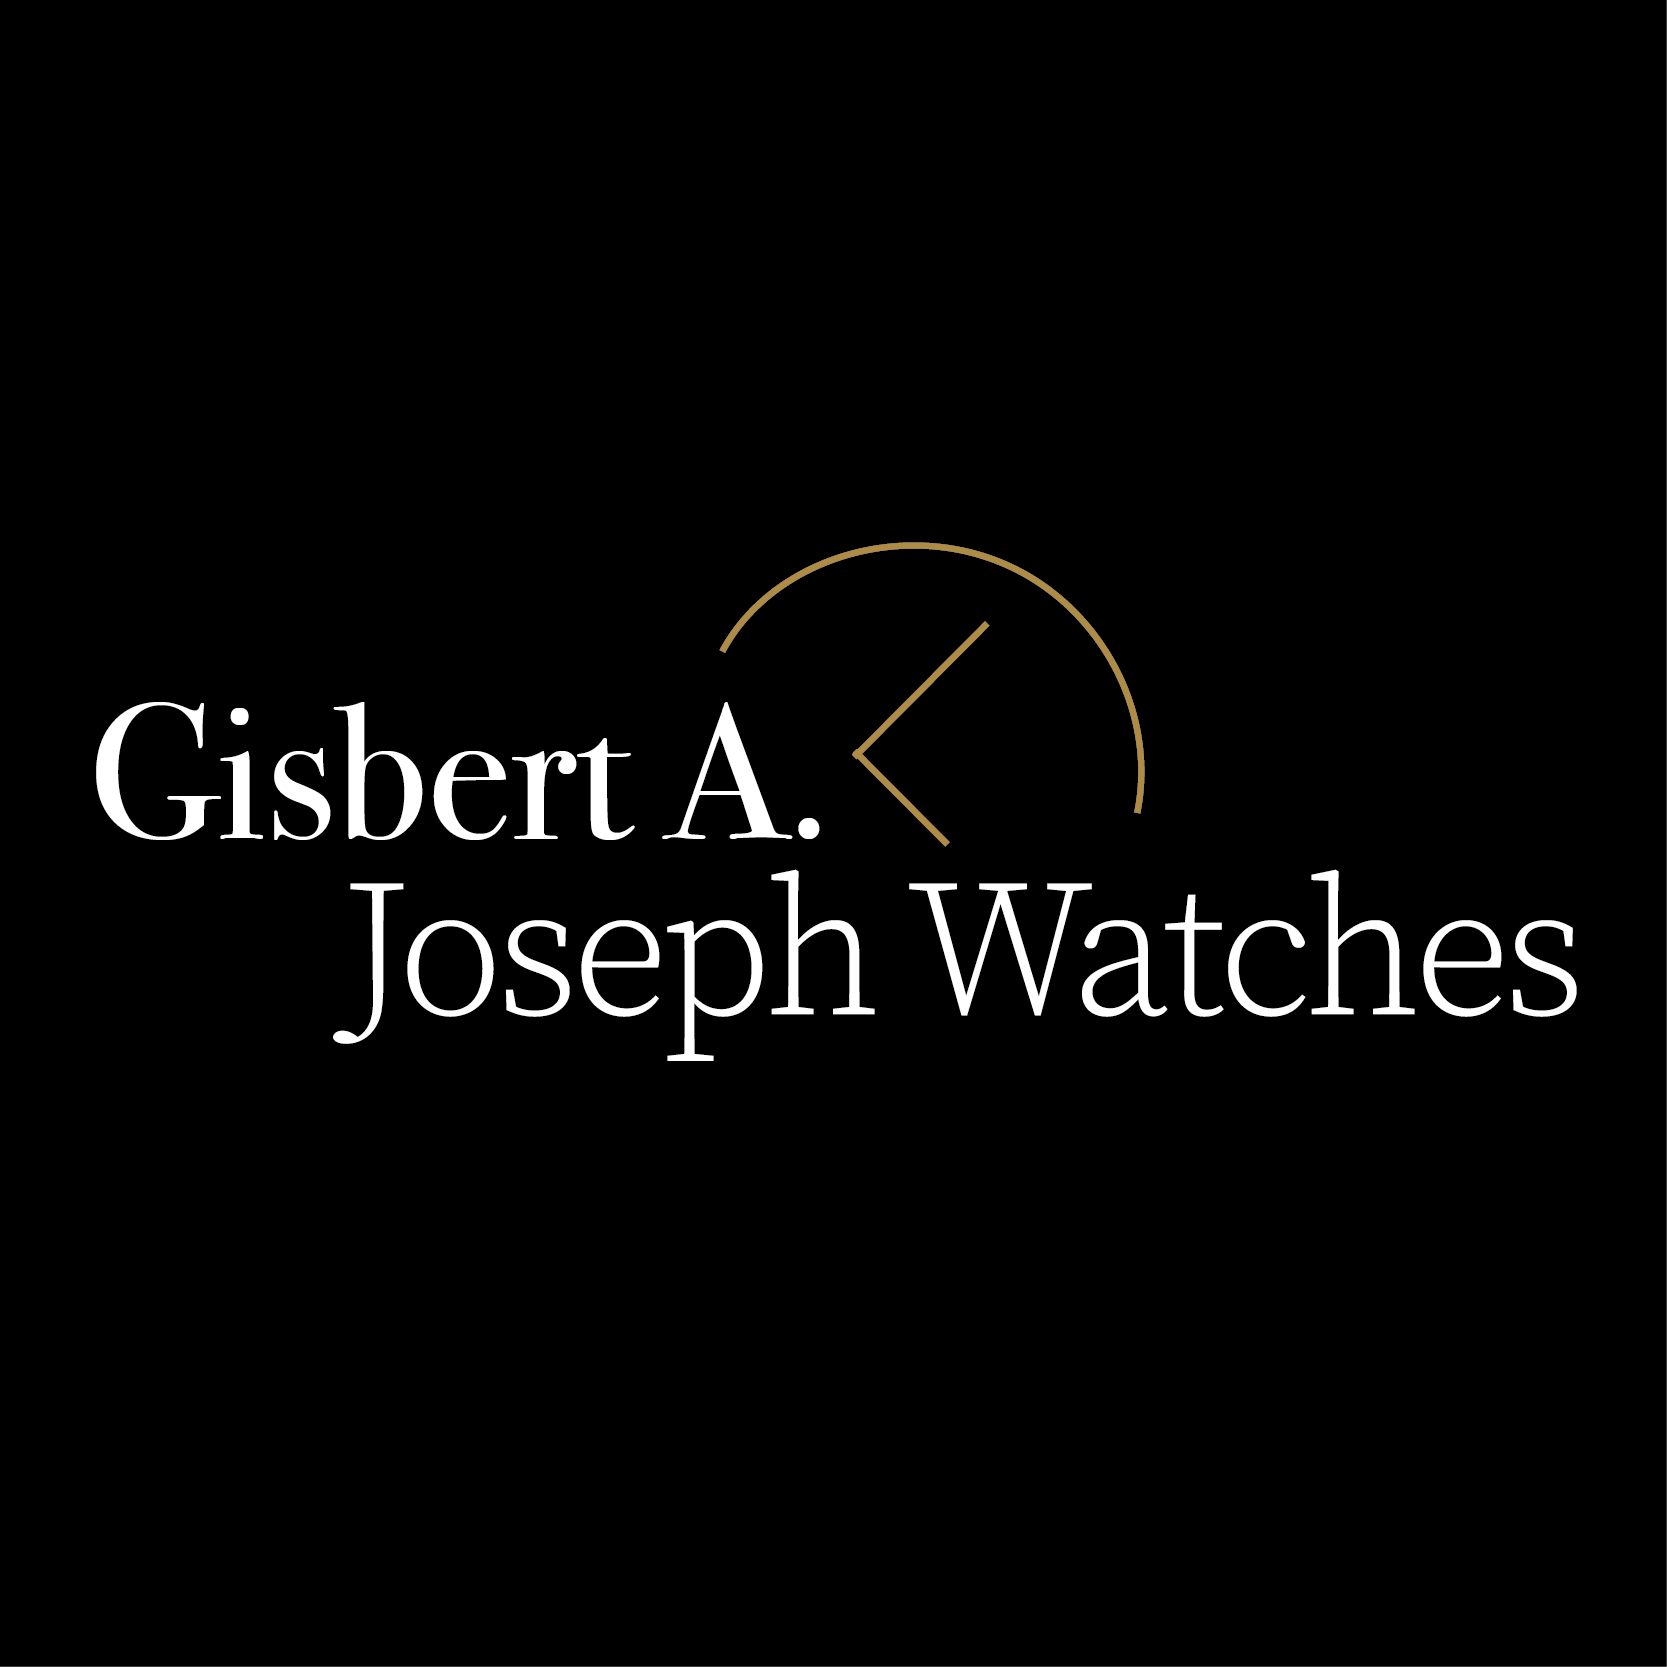 (c) Joseph-watches.com